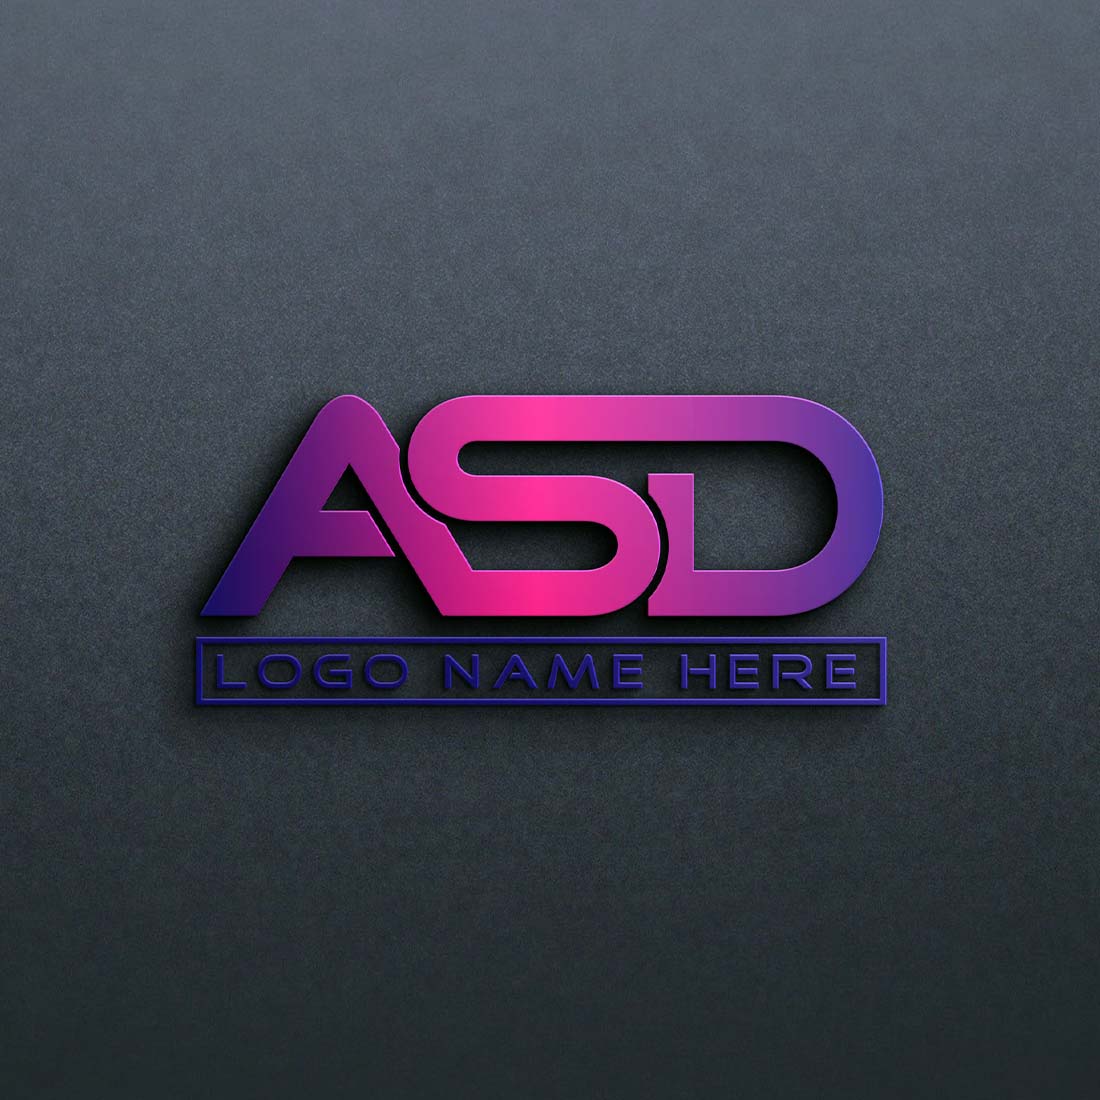 ASD Letter Logo Design in Illustrator CC - 100% Editable cover image.